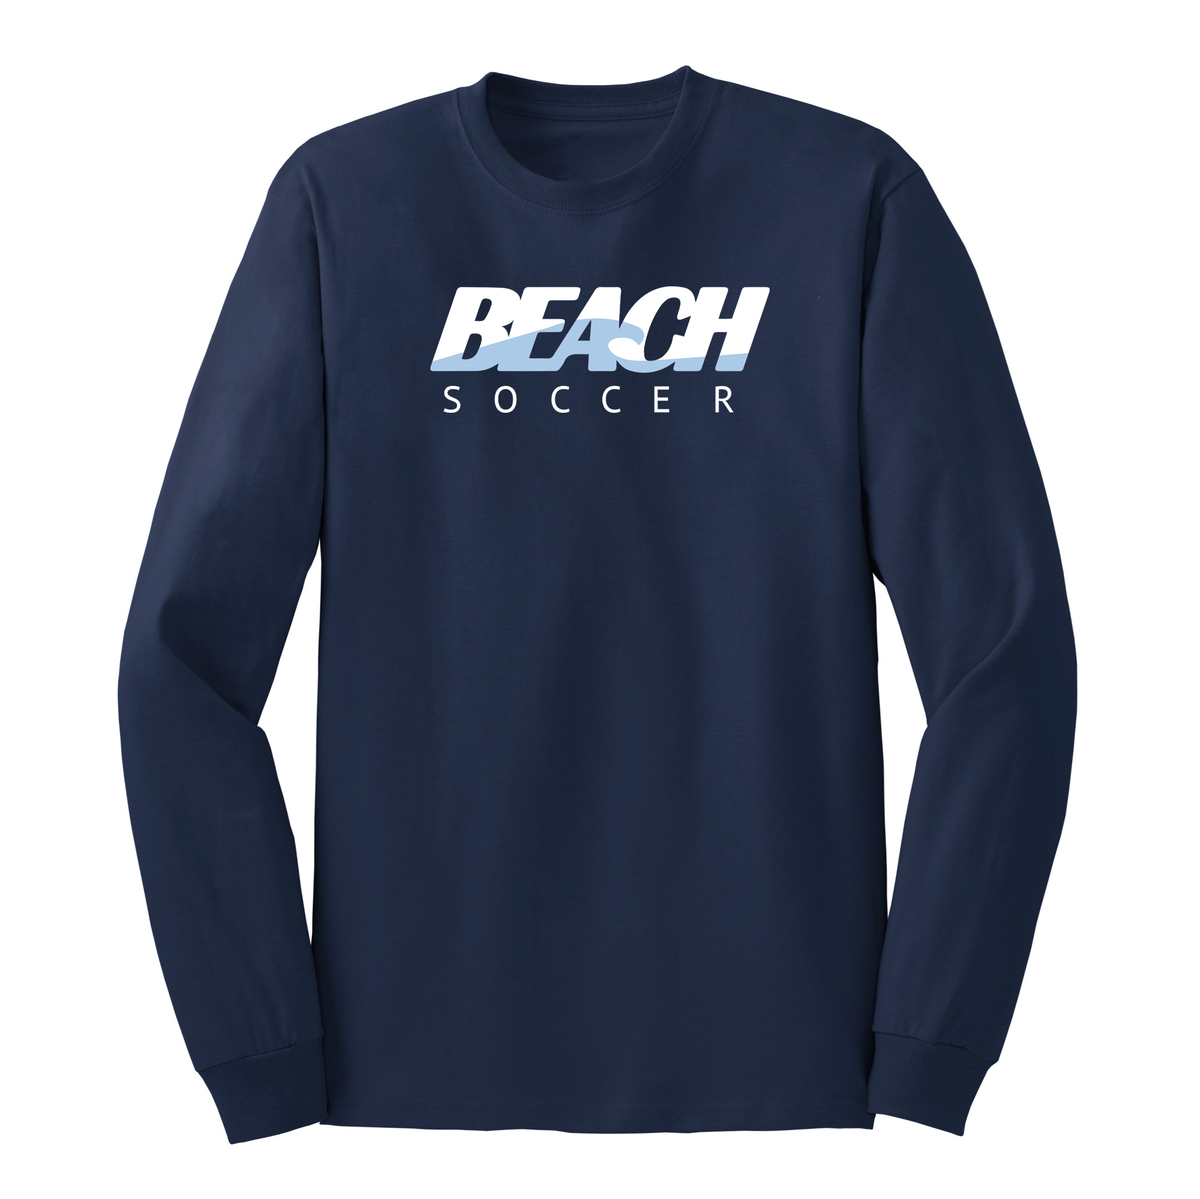 Long Beach Soccer Cotton Long Sleeve Shirt